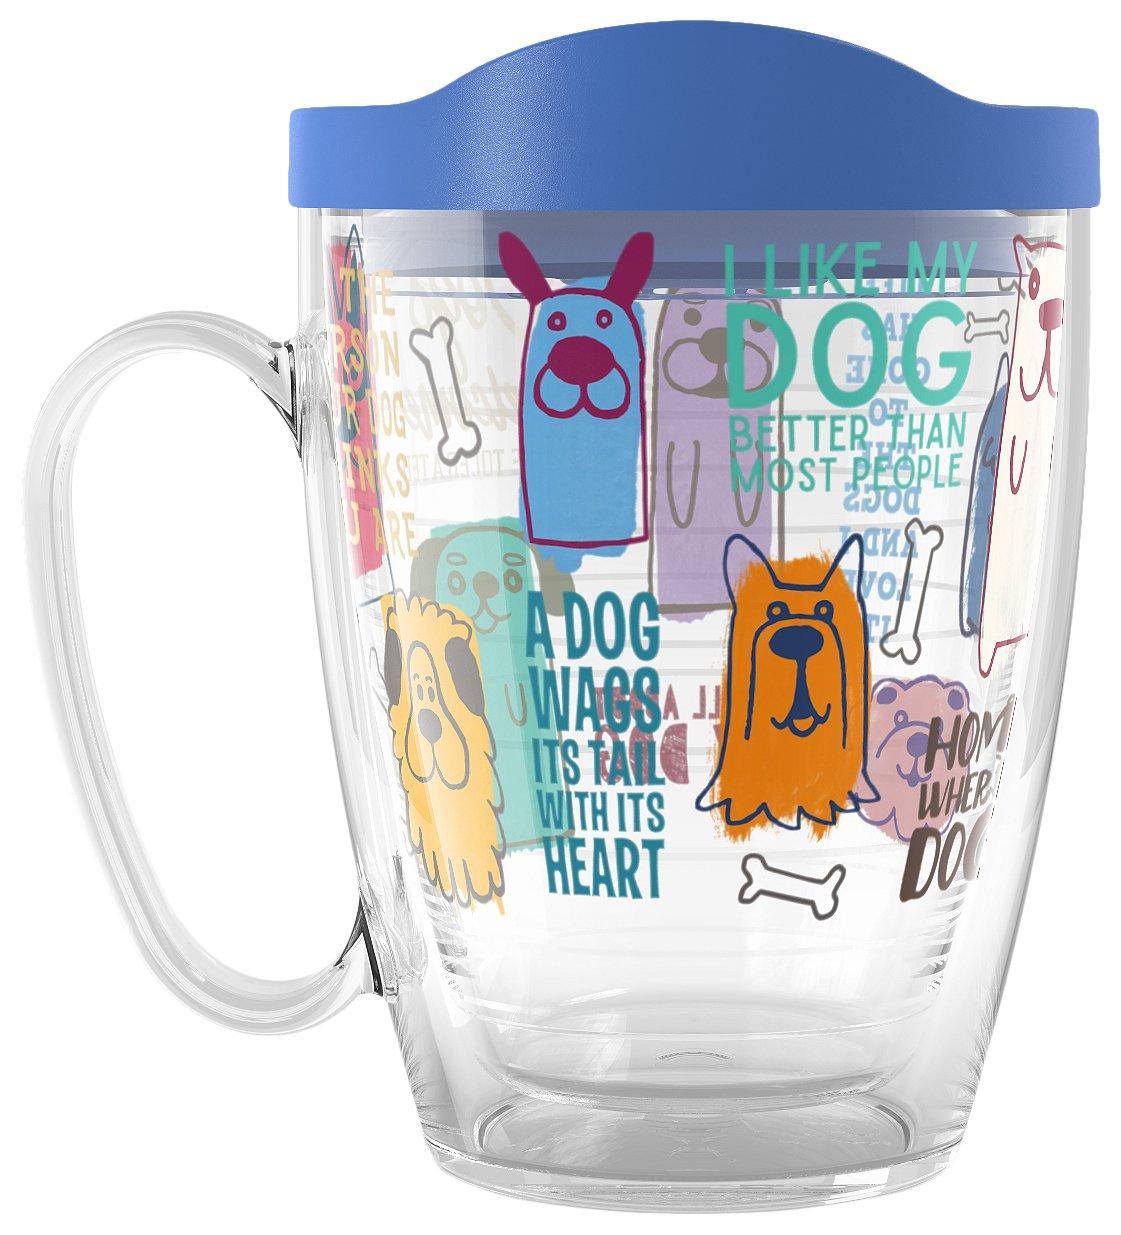 16 oz. Dog Sayings Mug With Lid